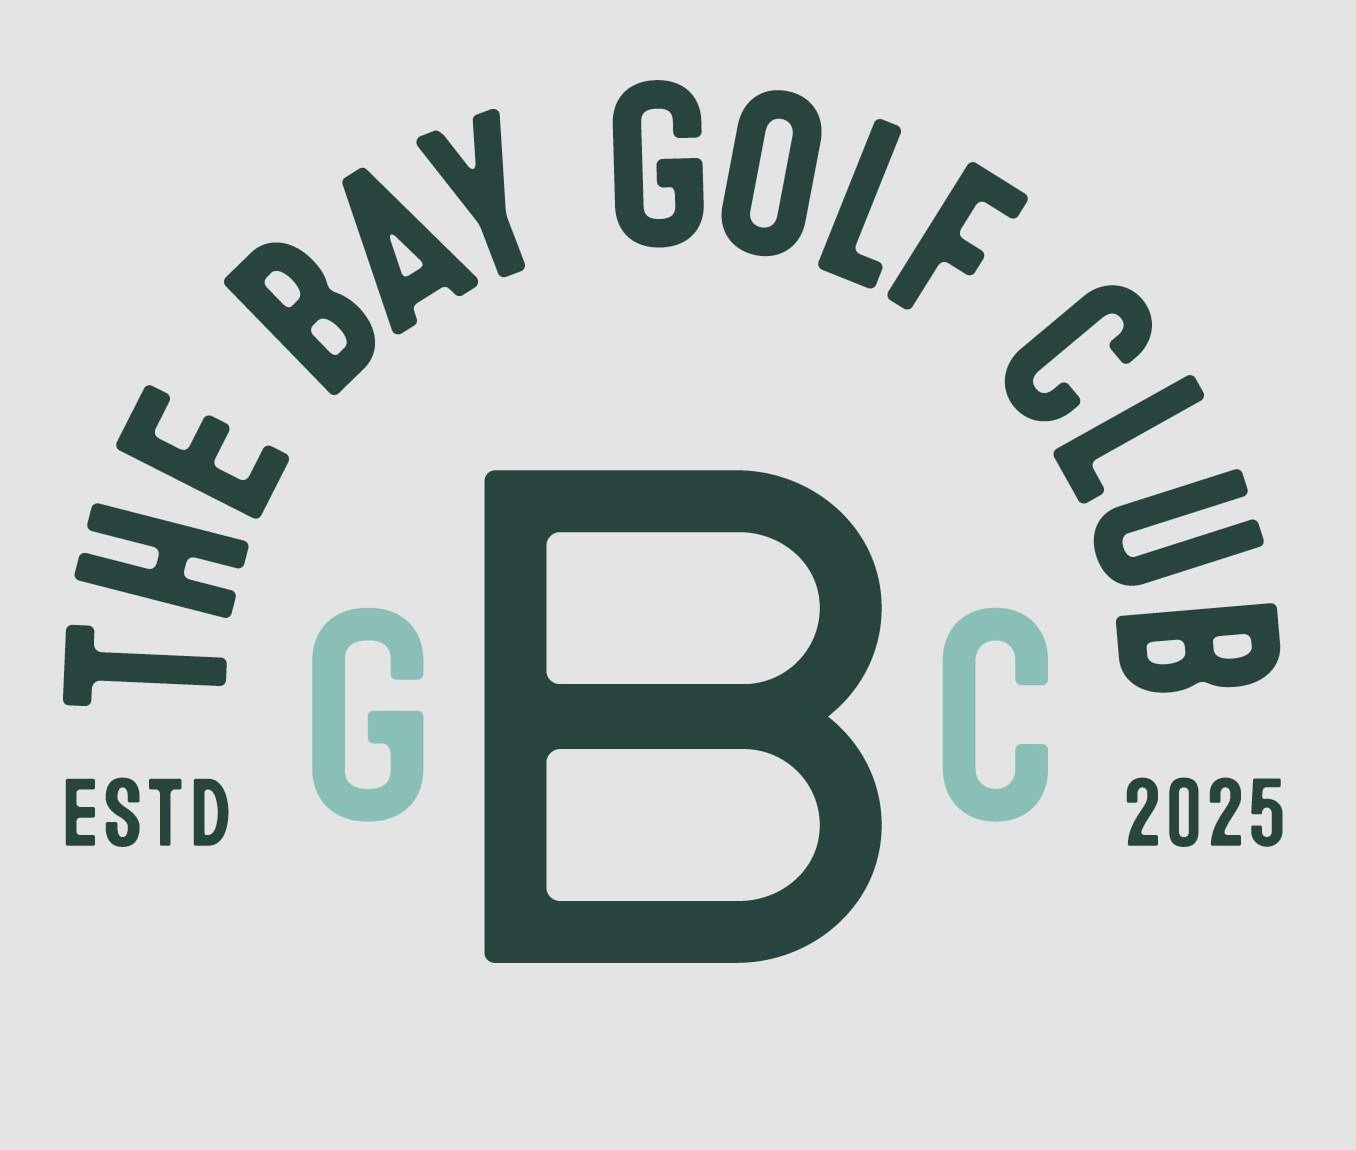  THE BAY GOLF CLUB GBC ESTD 2025